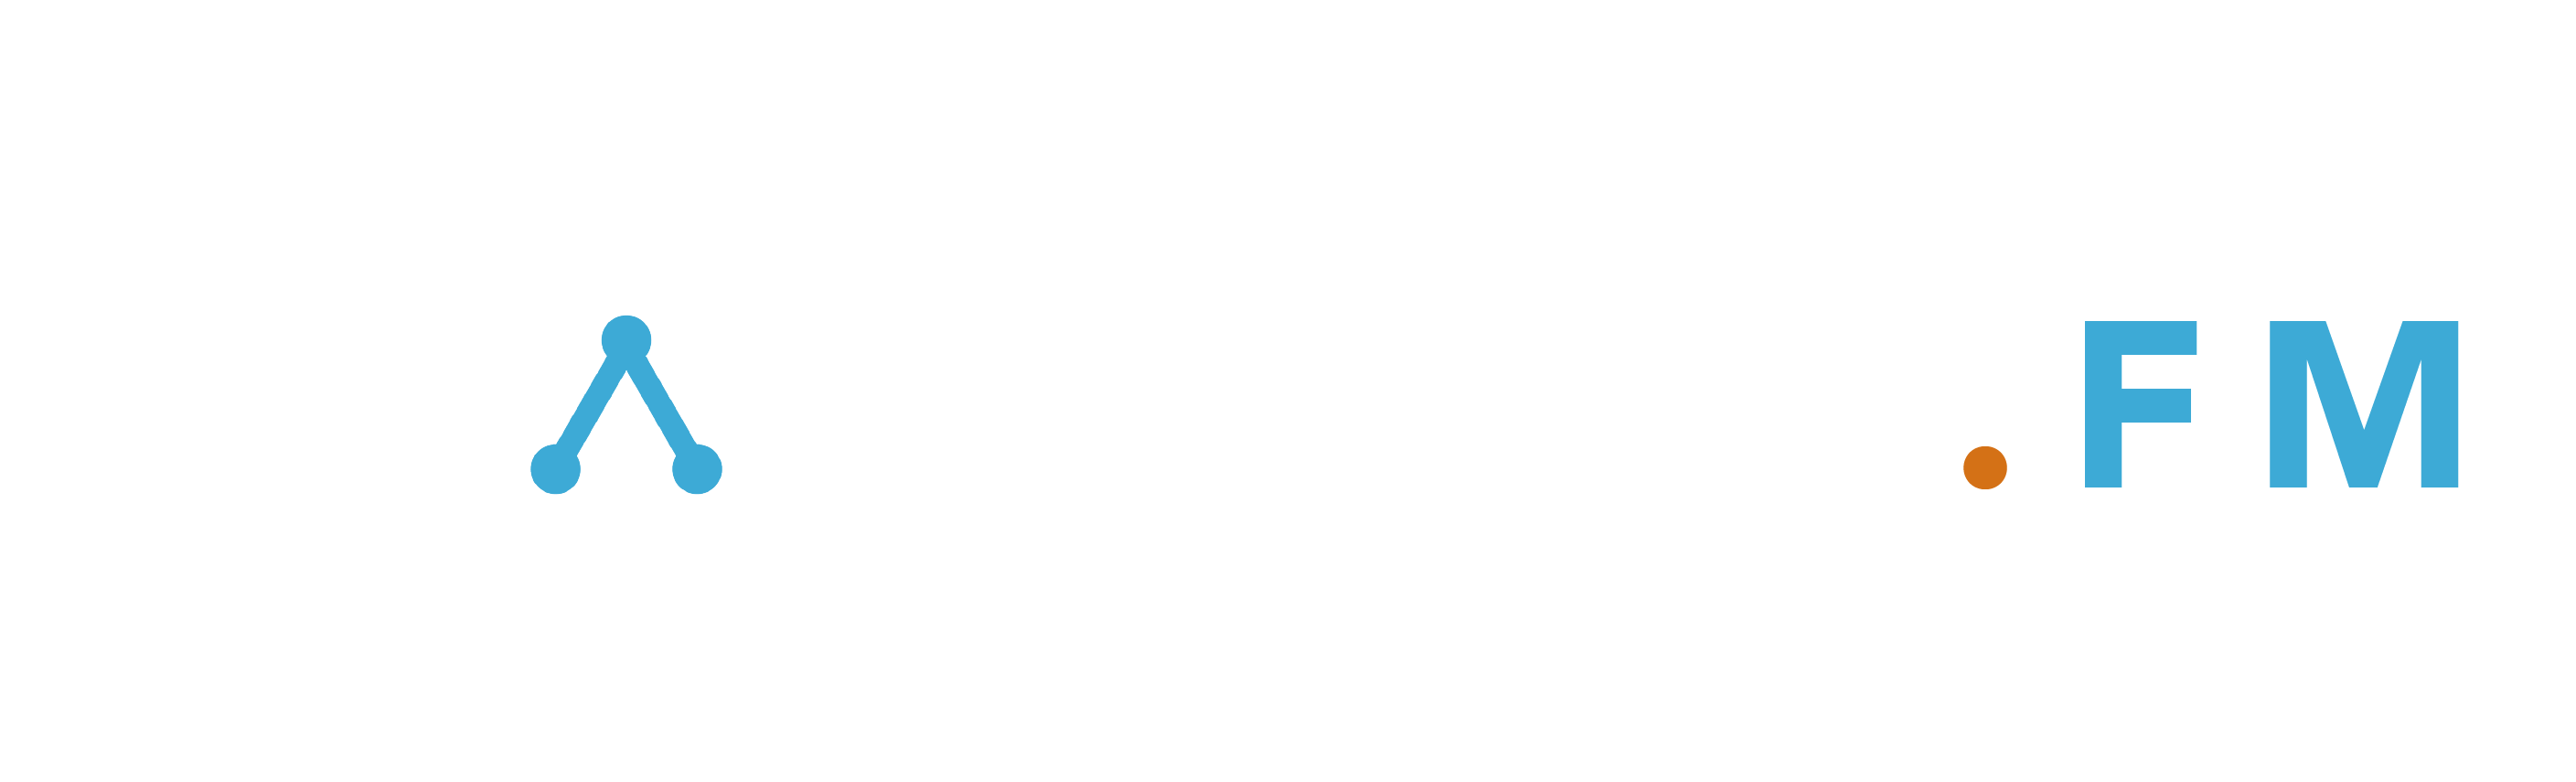 ShareableFM header logo-06-06 white